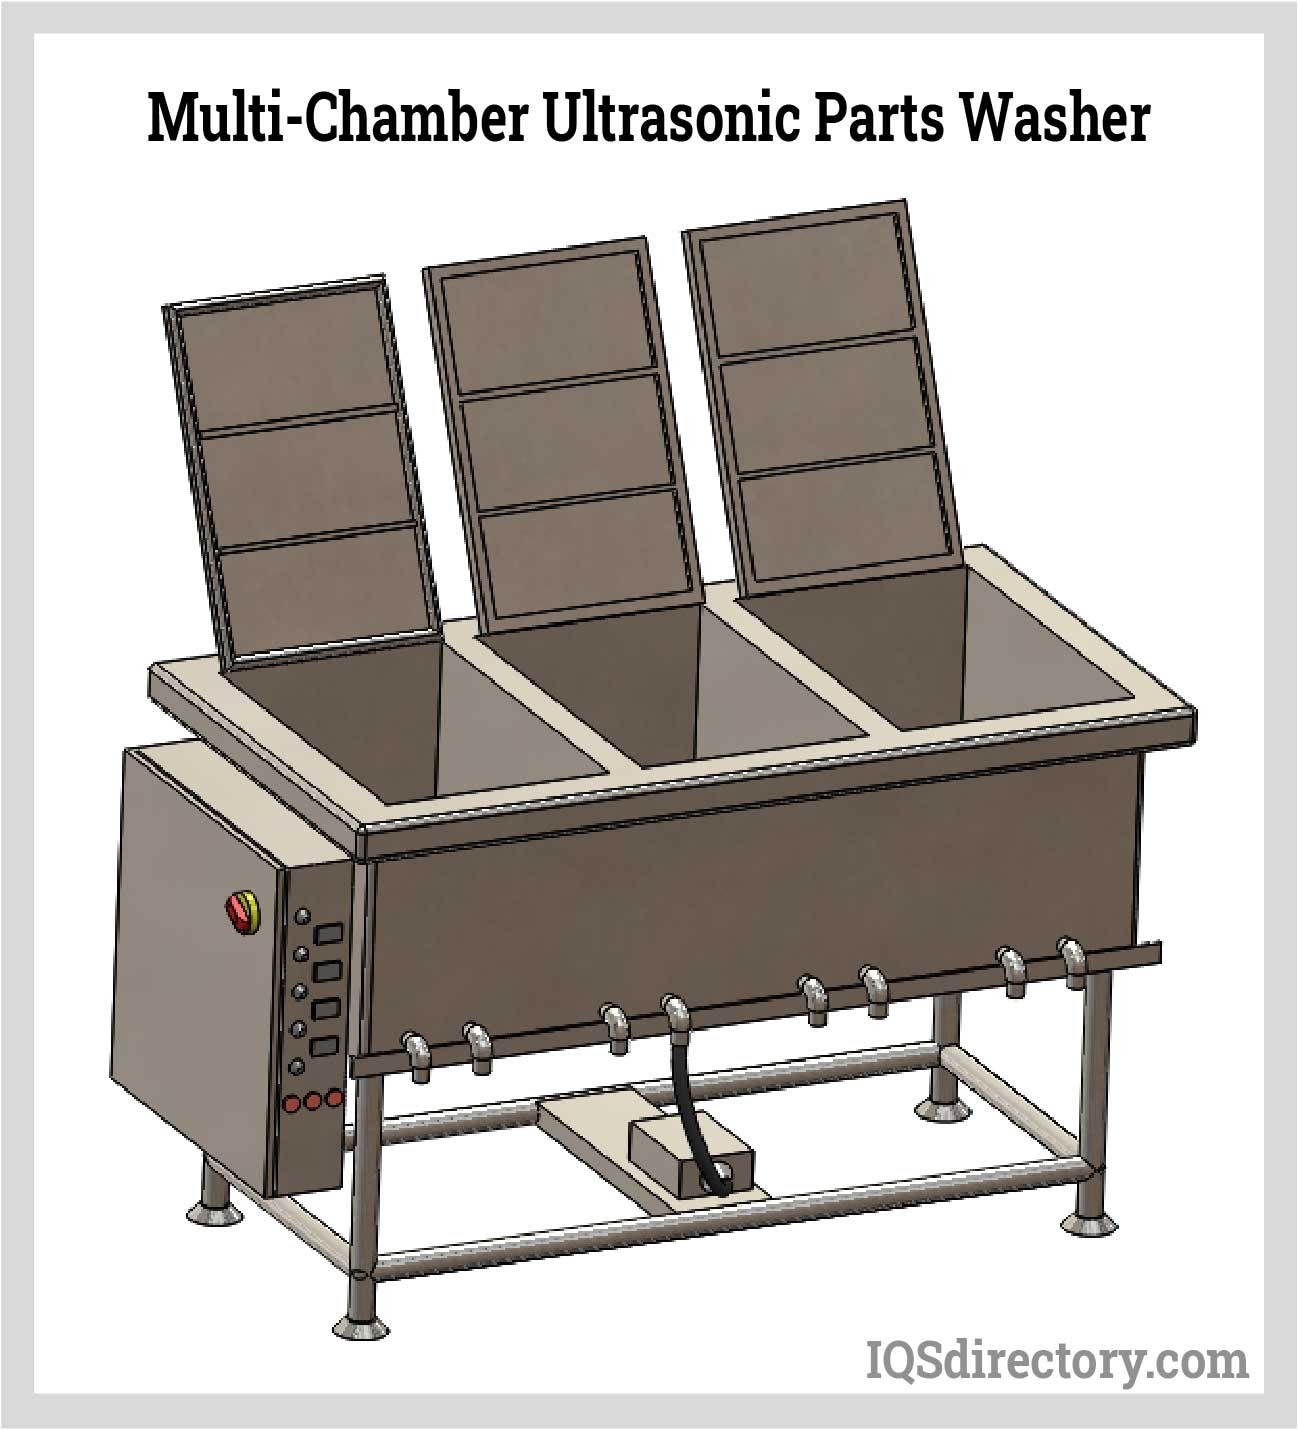 Multi-Chamber Ultrasonic Parts Washer